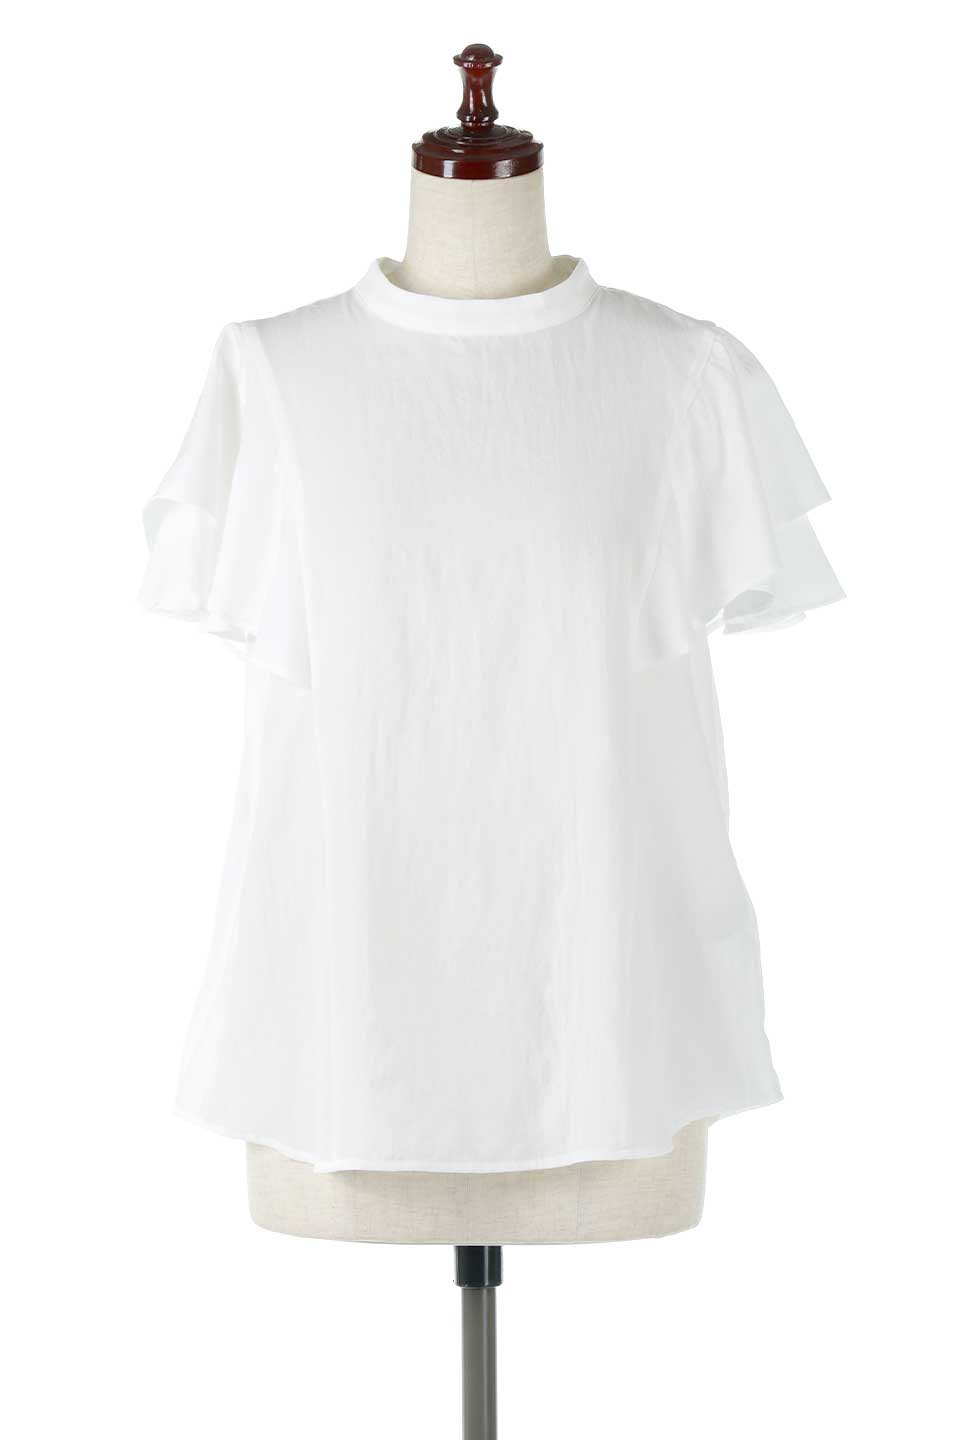 スタンドカラーとお袖のフリルが可愛い♡フリル襟シャツ♪白 インポート ブラウス